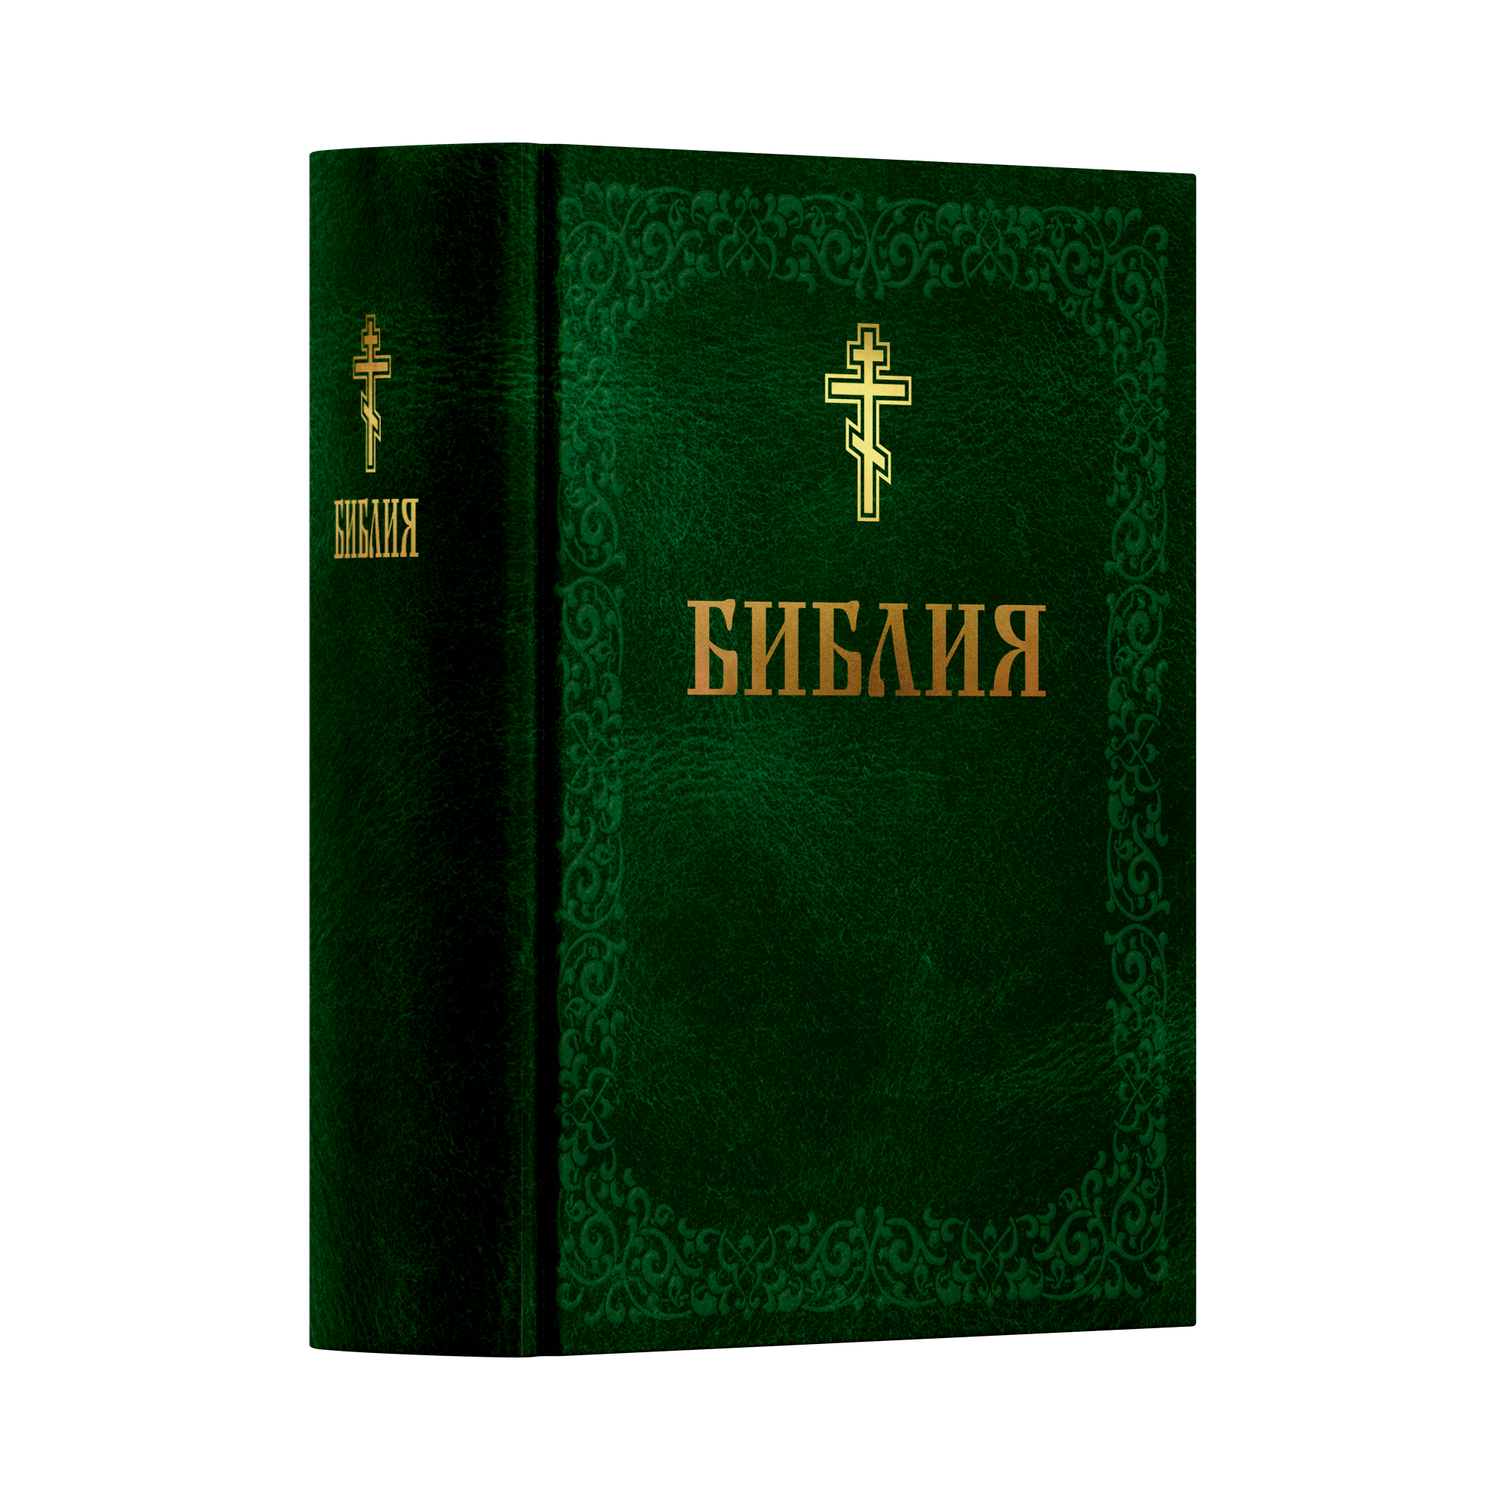 Книга Харвест Книга православная Библия Новый и Ветхий завет Священного Писания зеленая - фото 1